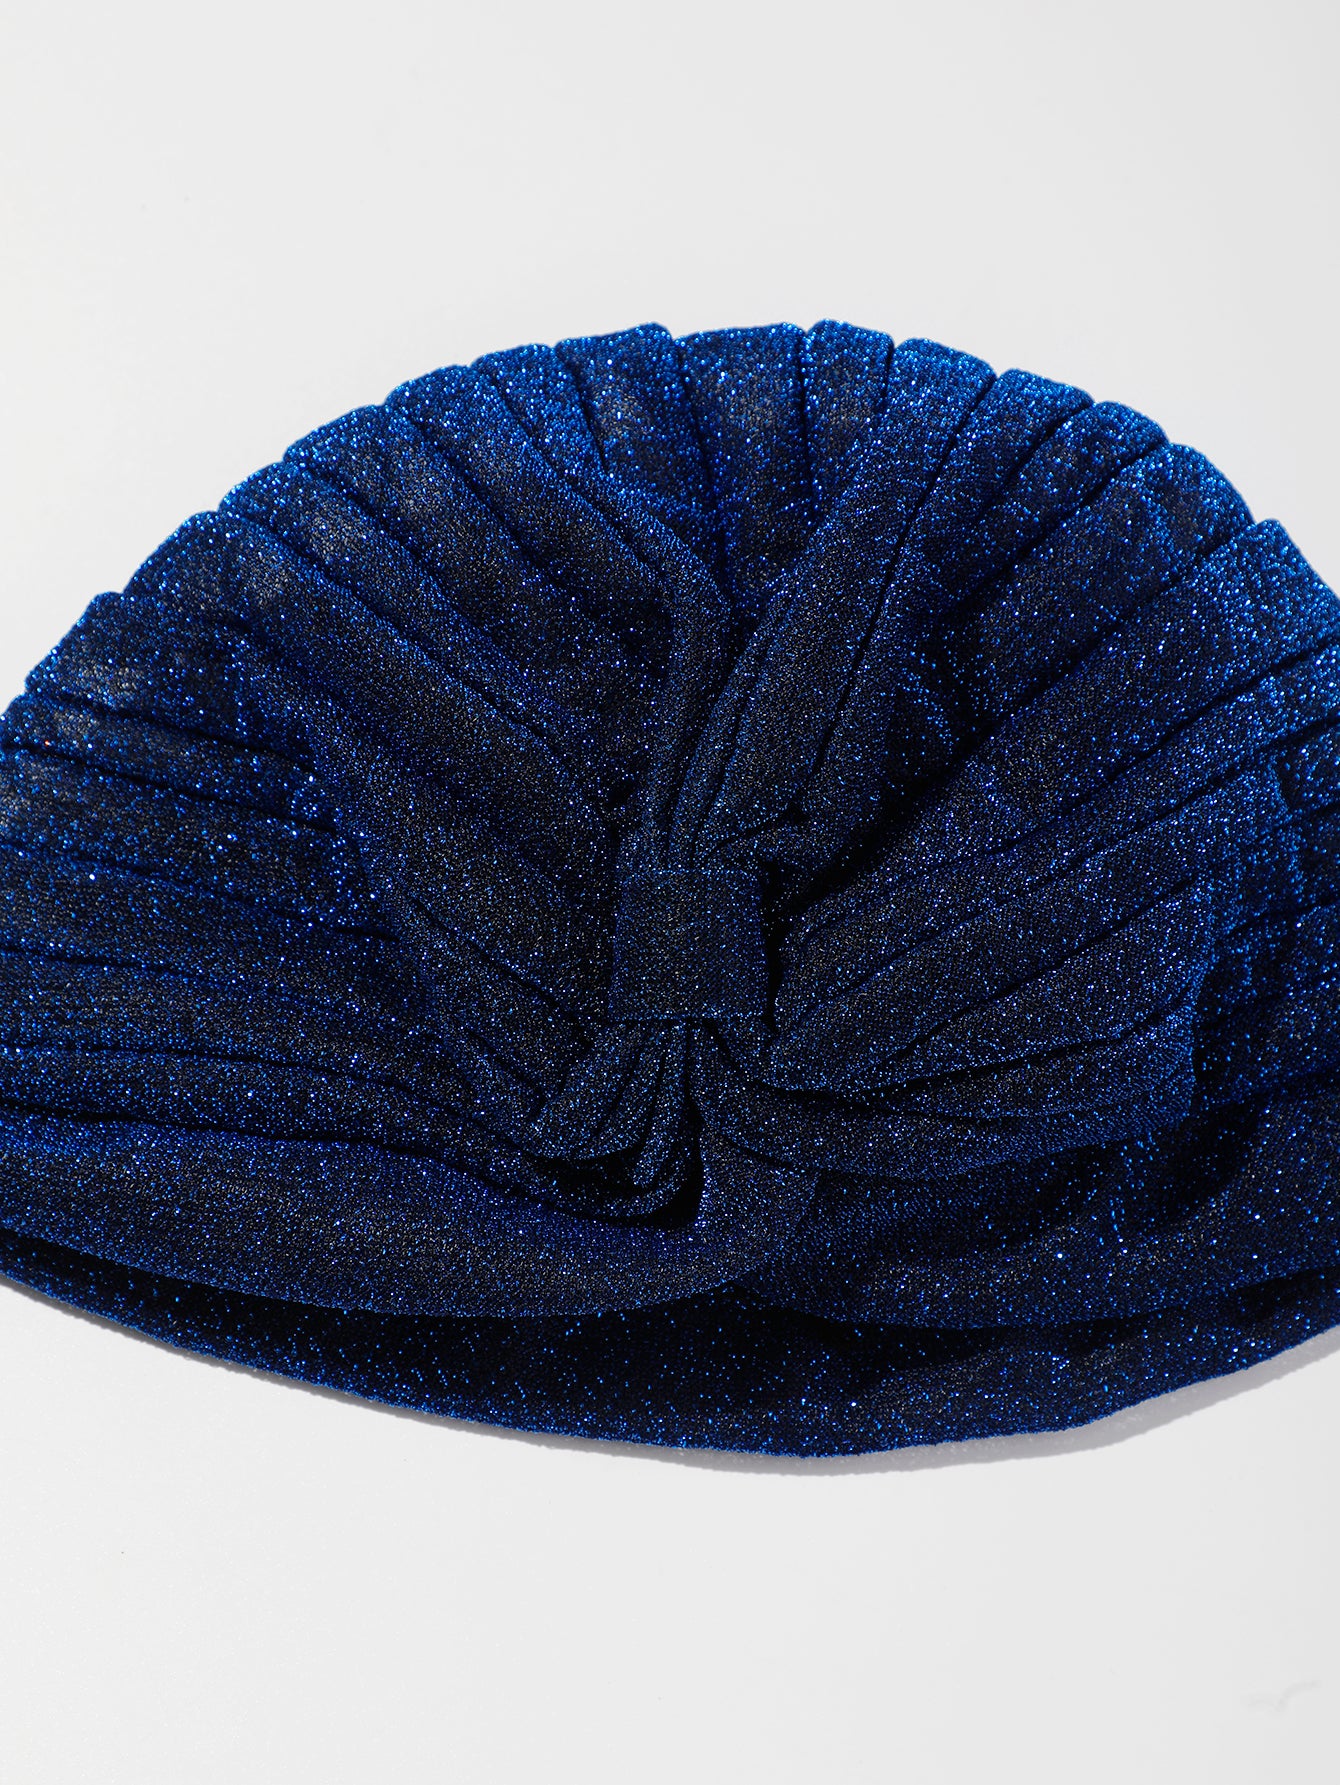 ARTILADY blue hat  Shiny hat